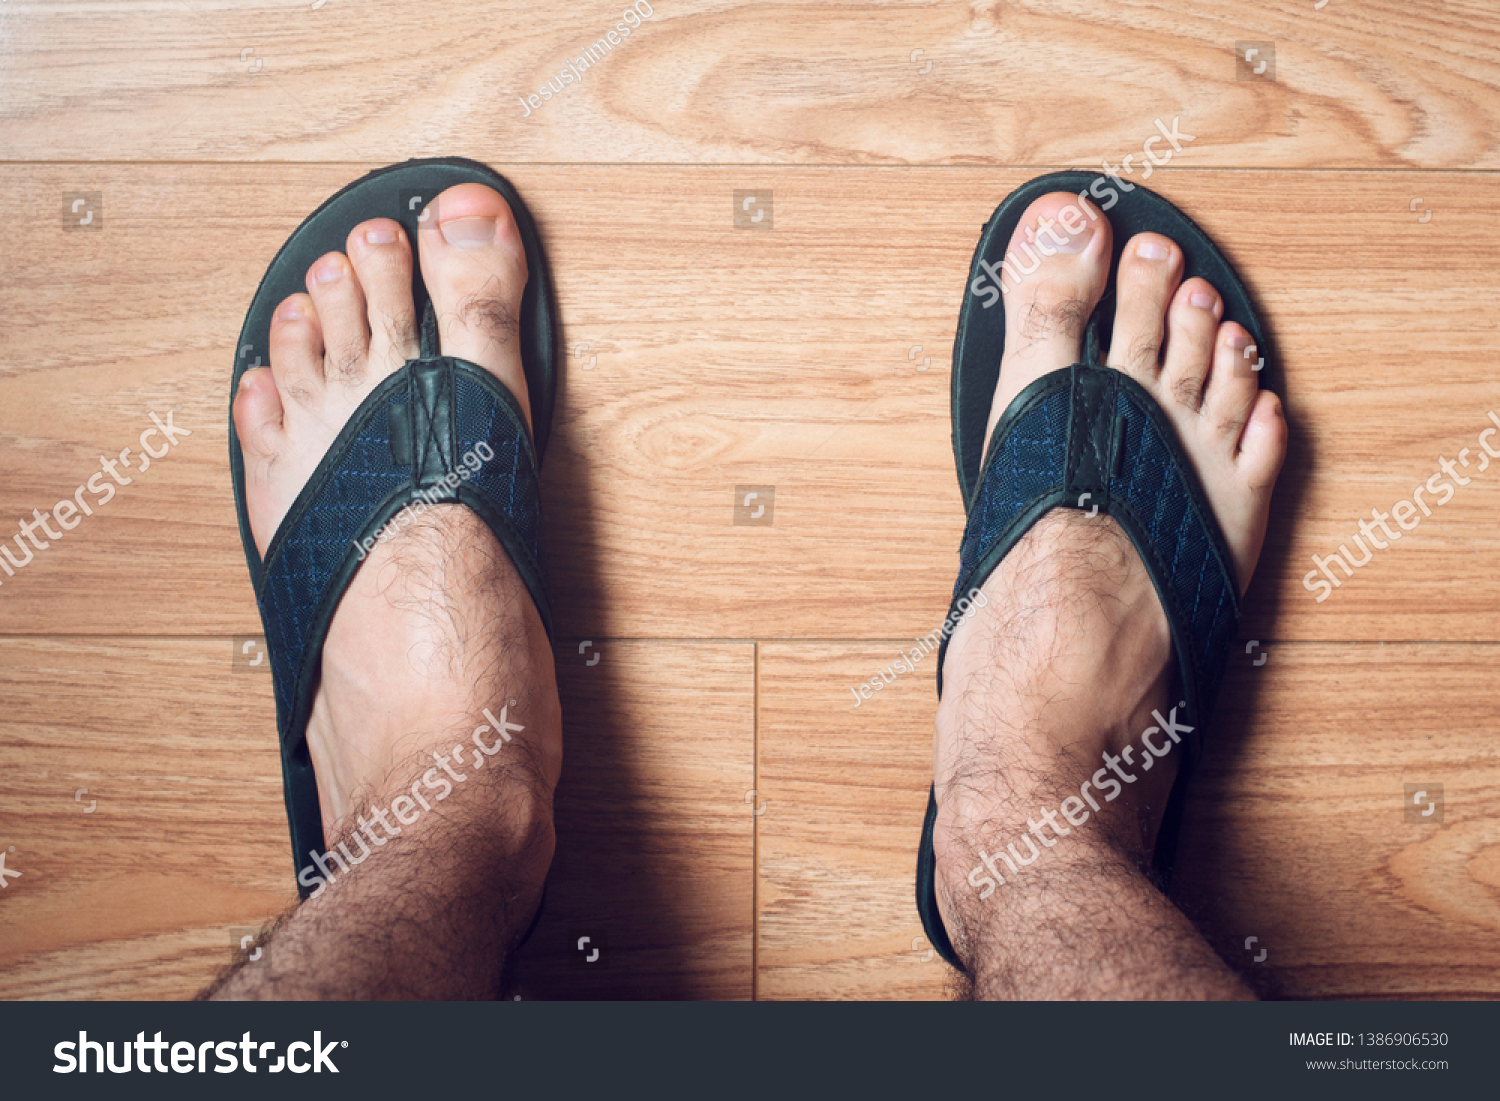 men's feet in flip flops